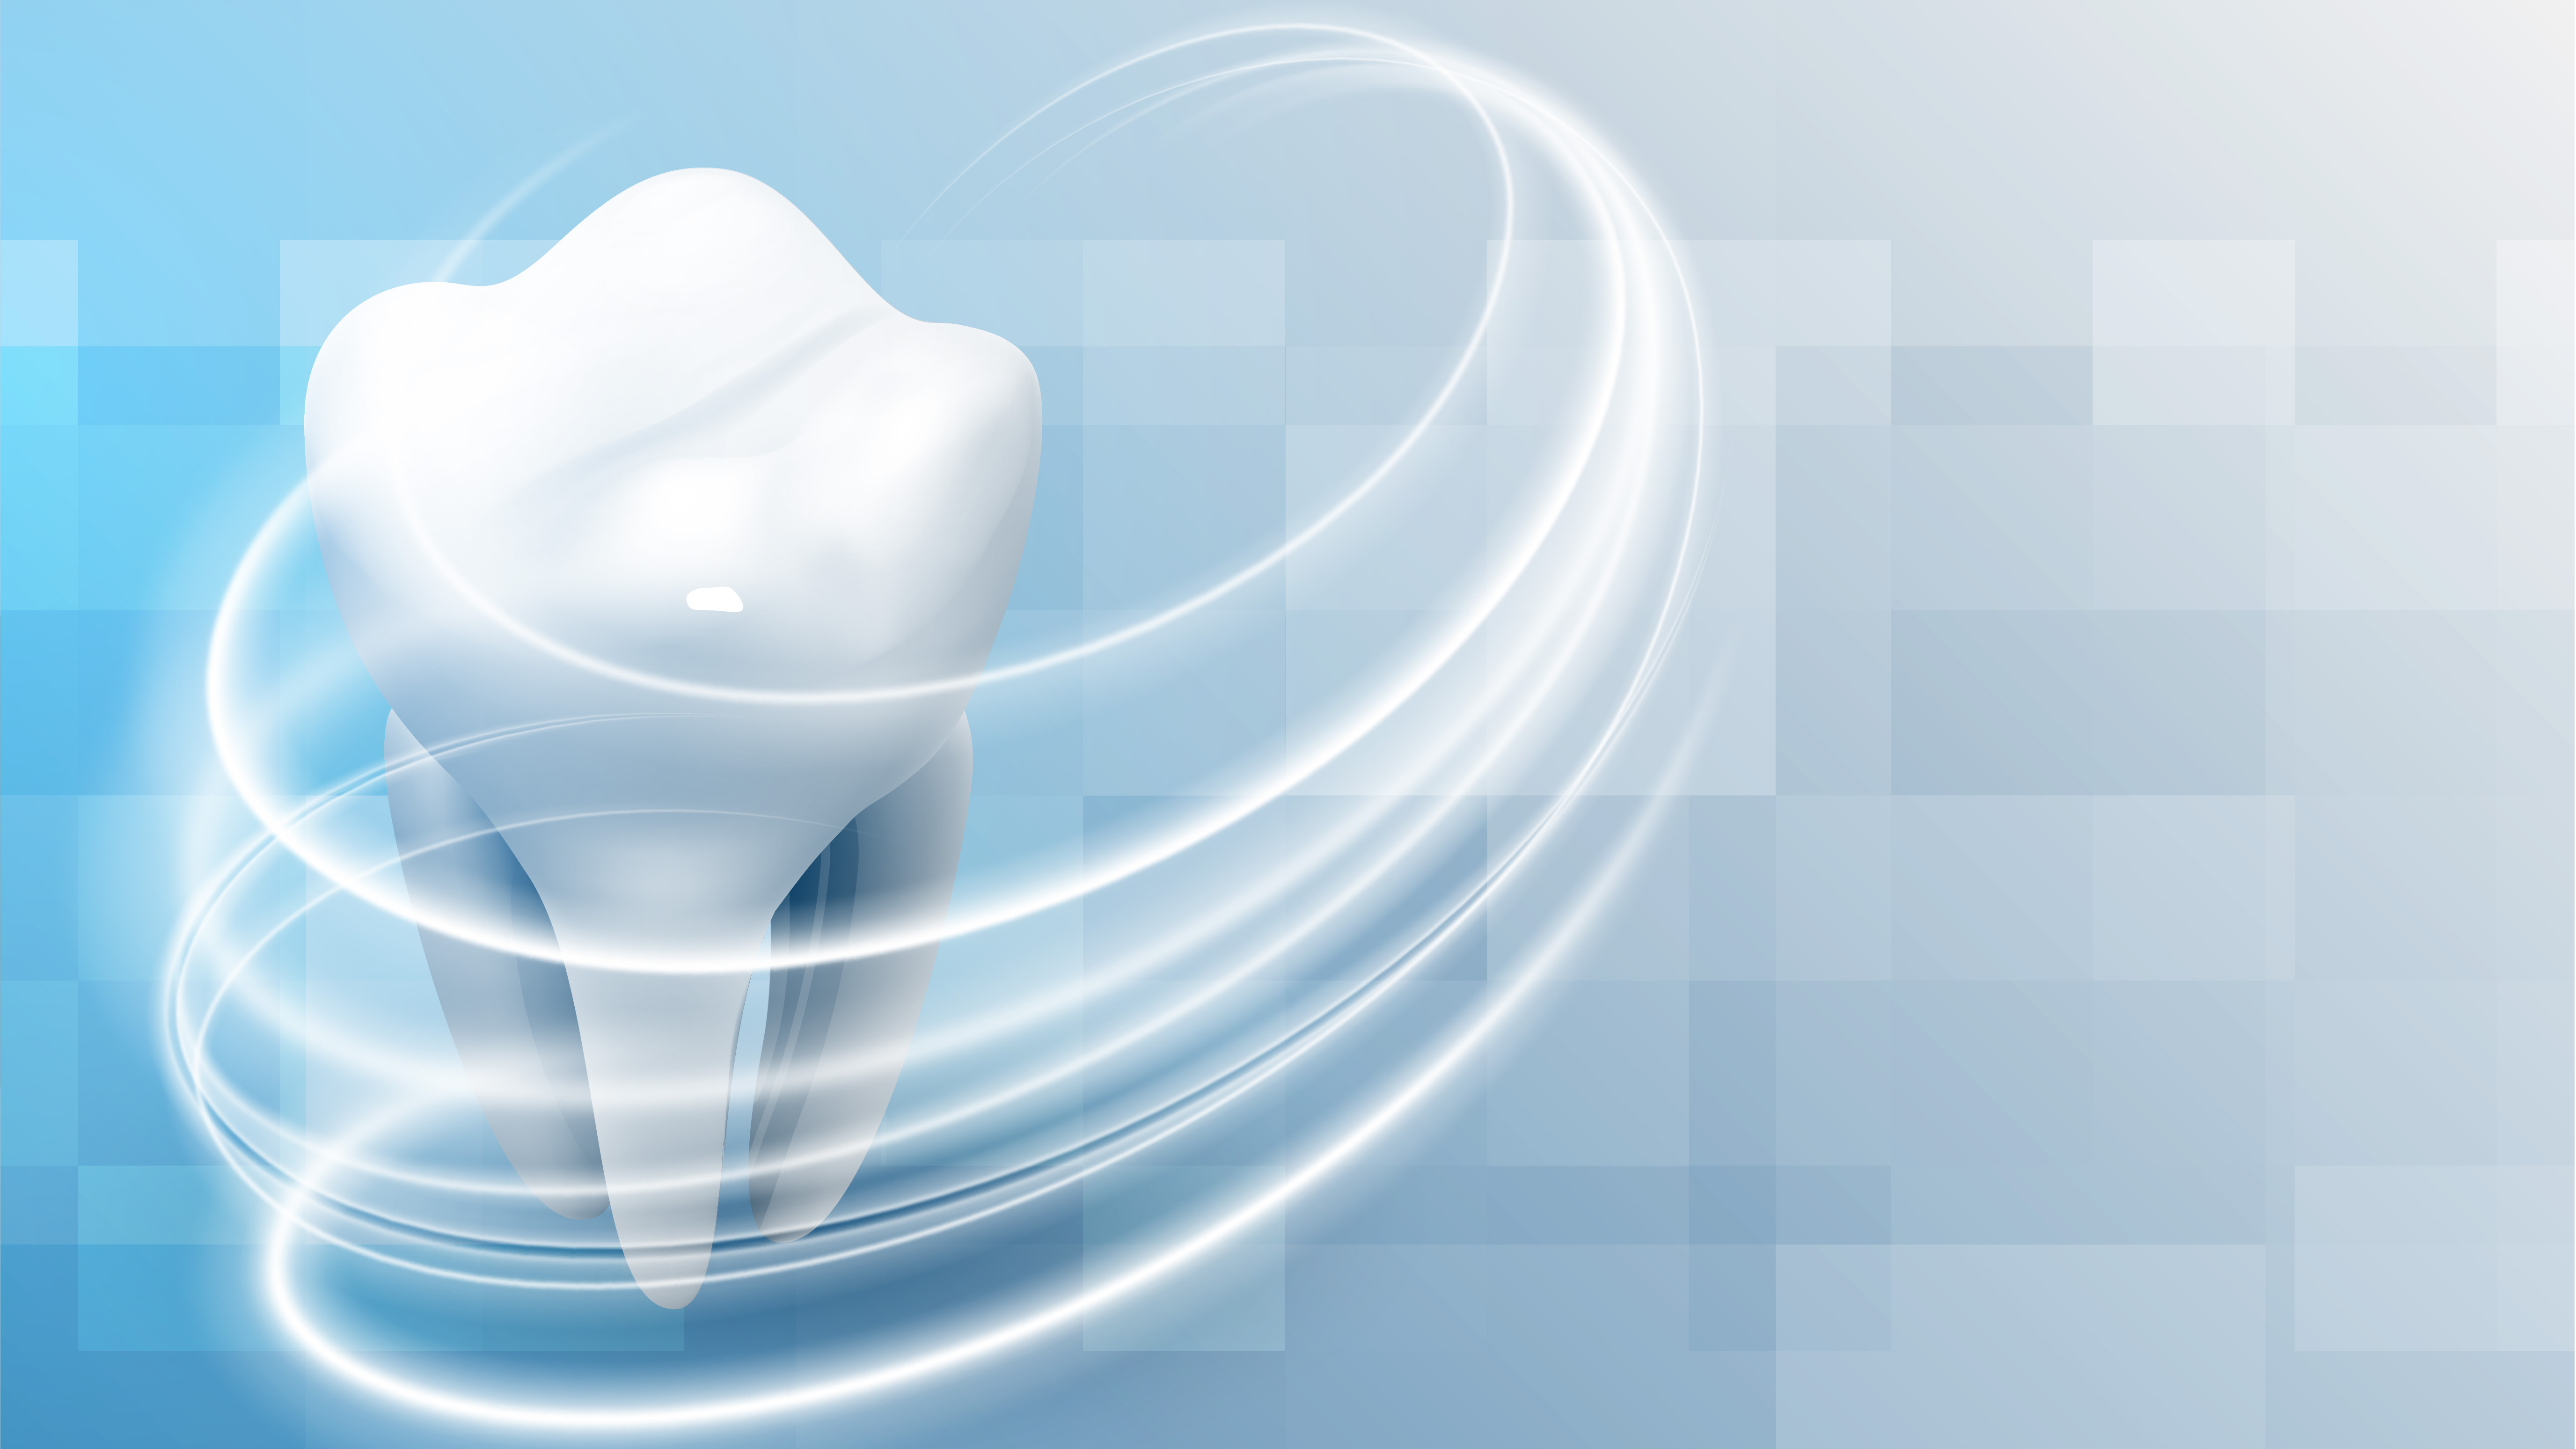 Amalgam, Komposite, Gold und Keramik - Jede Zahnfüllung hat Vor- und Nachteile